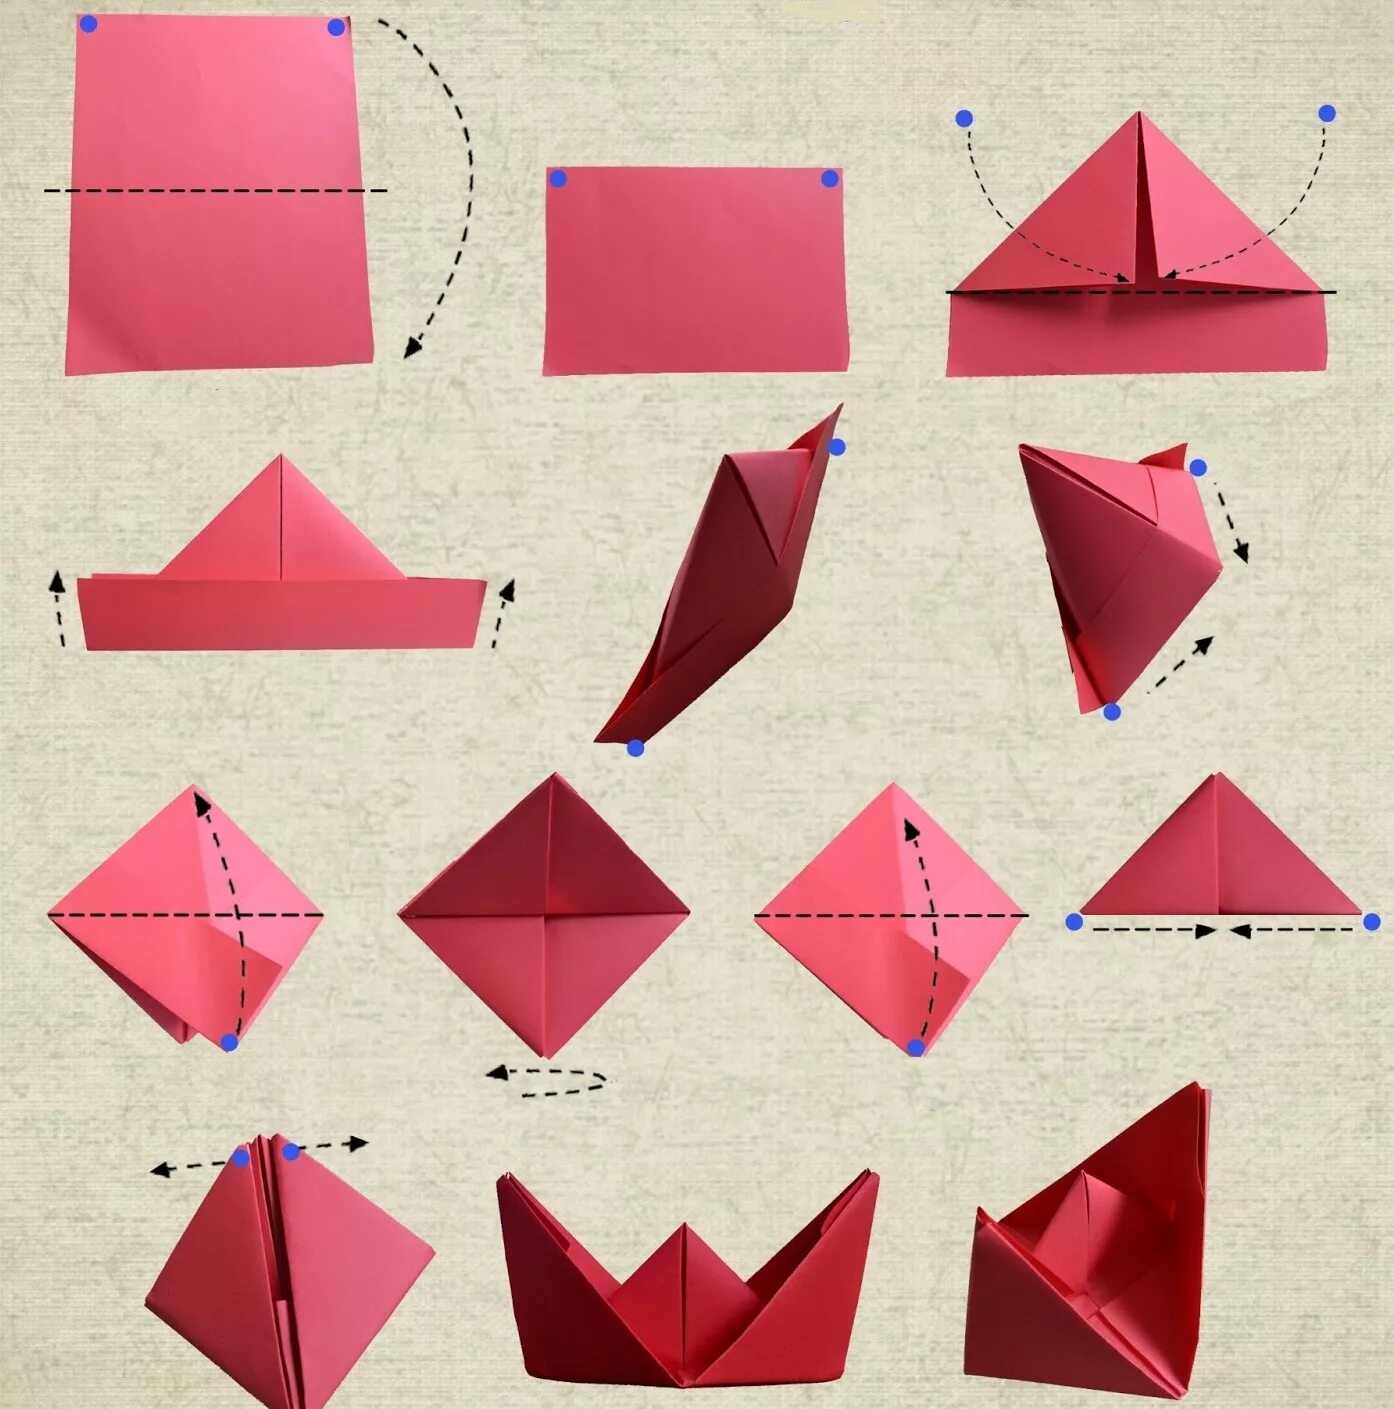 Что можно сделать из а 4. Бумажный кораблик оригами. Как делать кораблики из бумаги своими руками а4. Оригами из бумаги для начинающих кораблик пошагово. Как делать бумажный кораблик оригами.